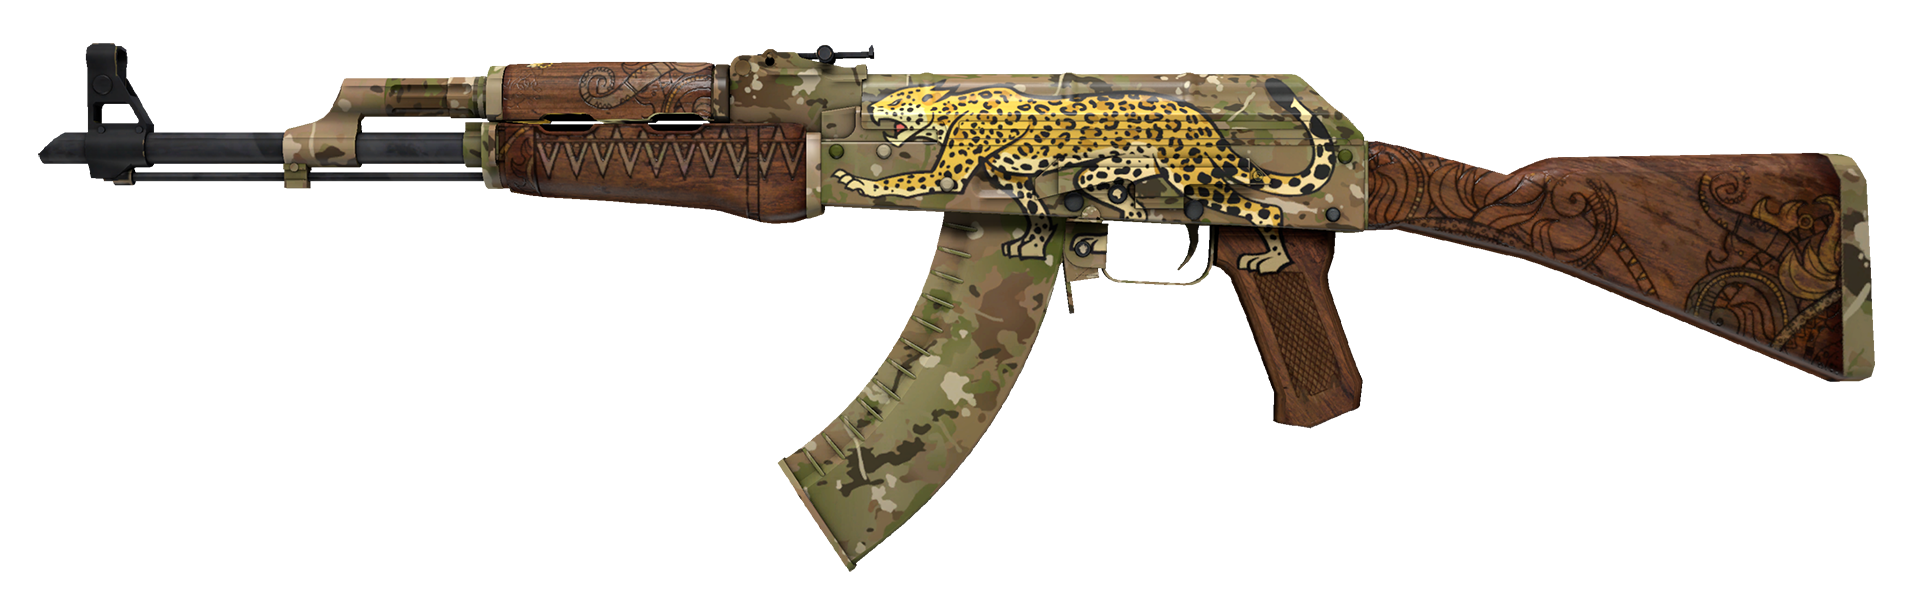 AK-47 Panthera onca Large Rendering